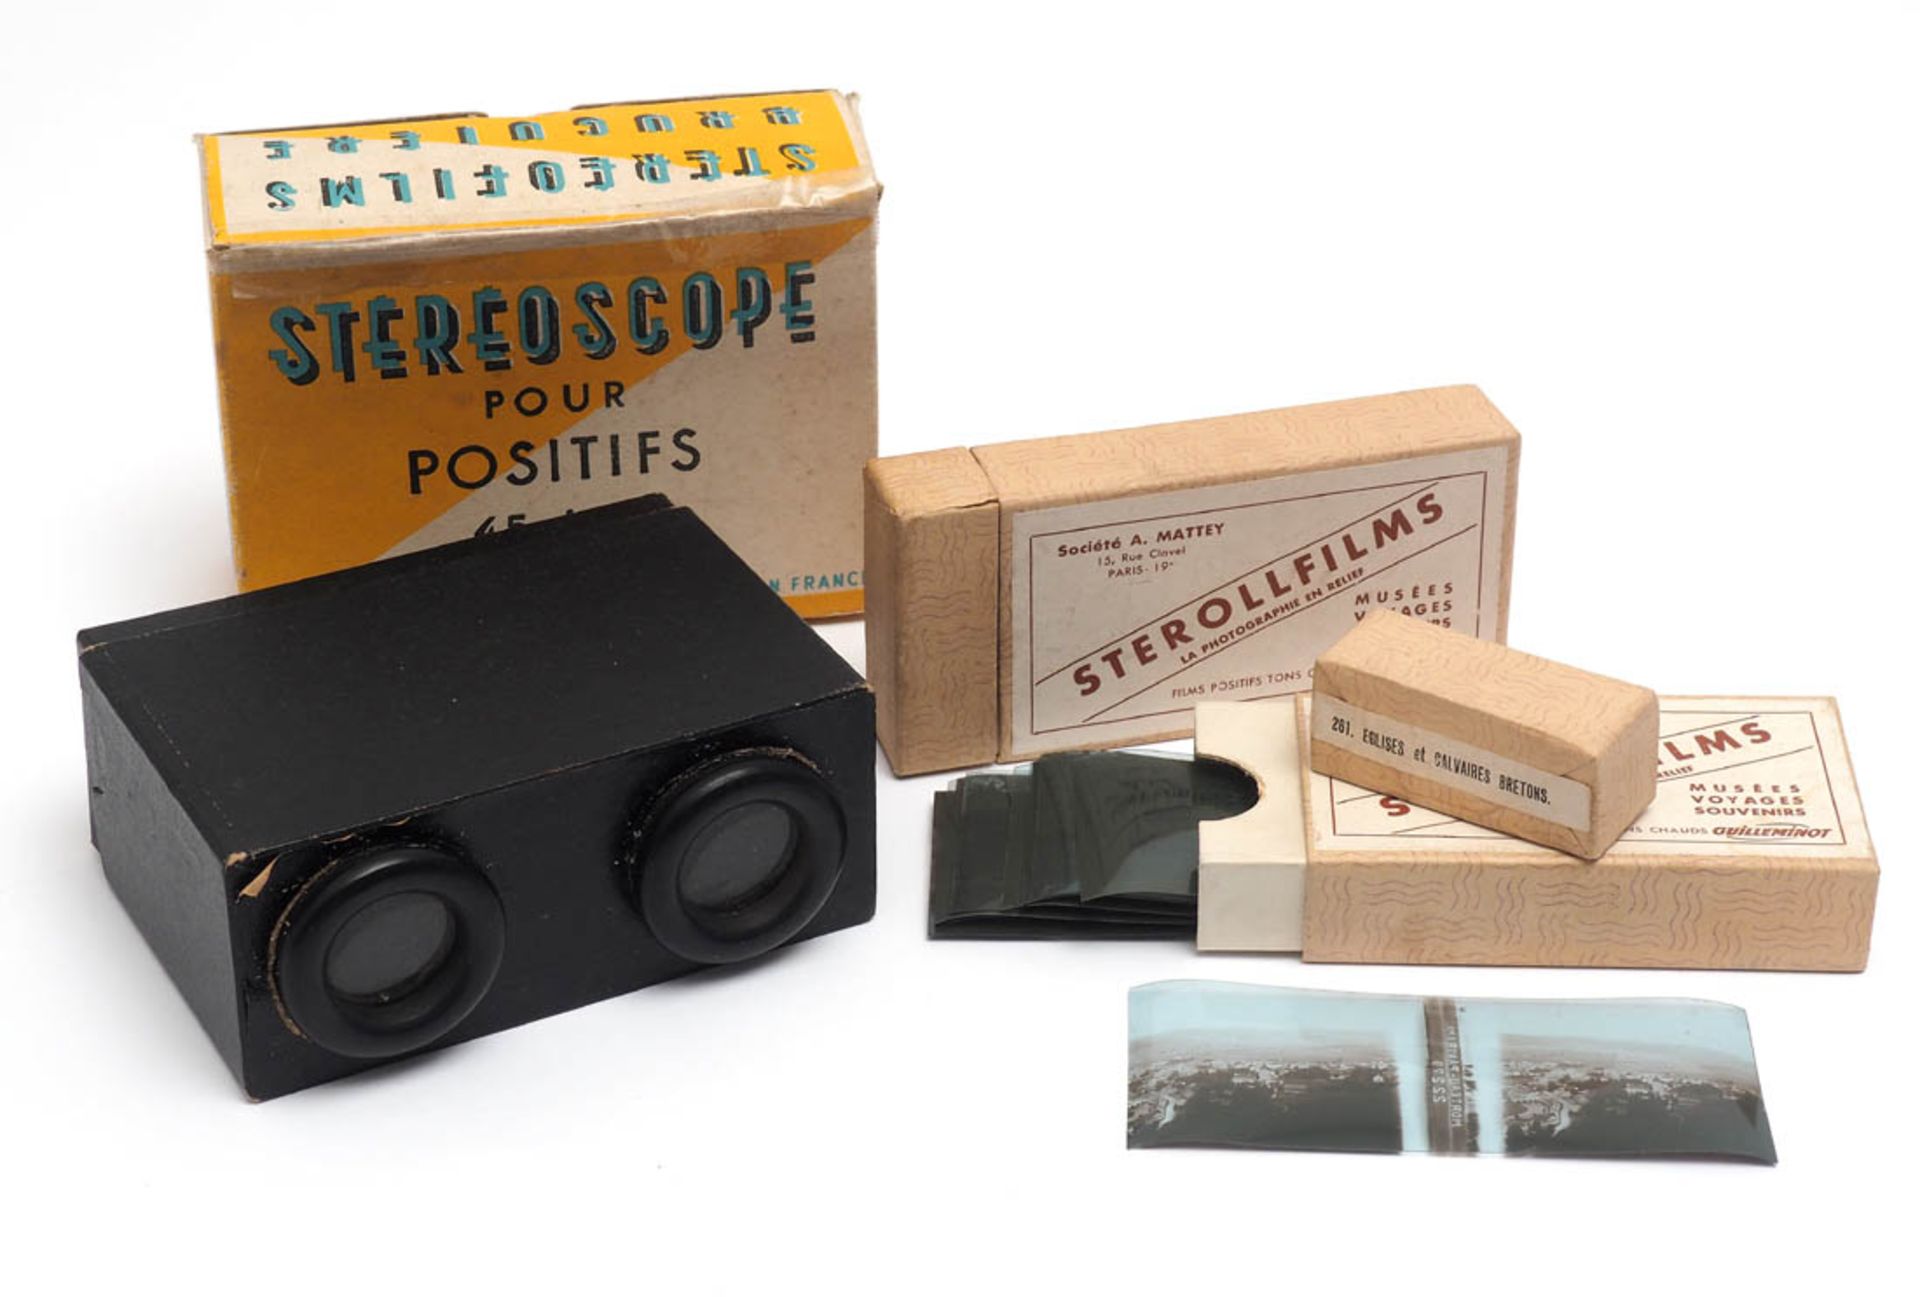 Stereoskop, Frankreich Für Positive. Mit zwei Sterollfilmen. 12x9x5cm.